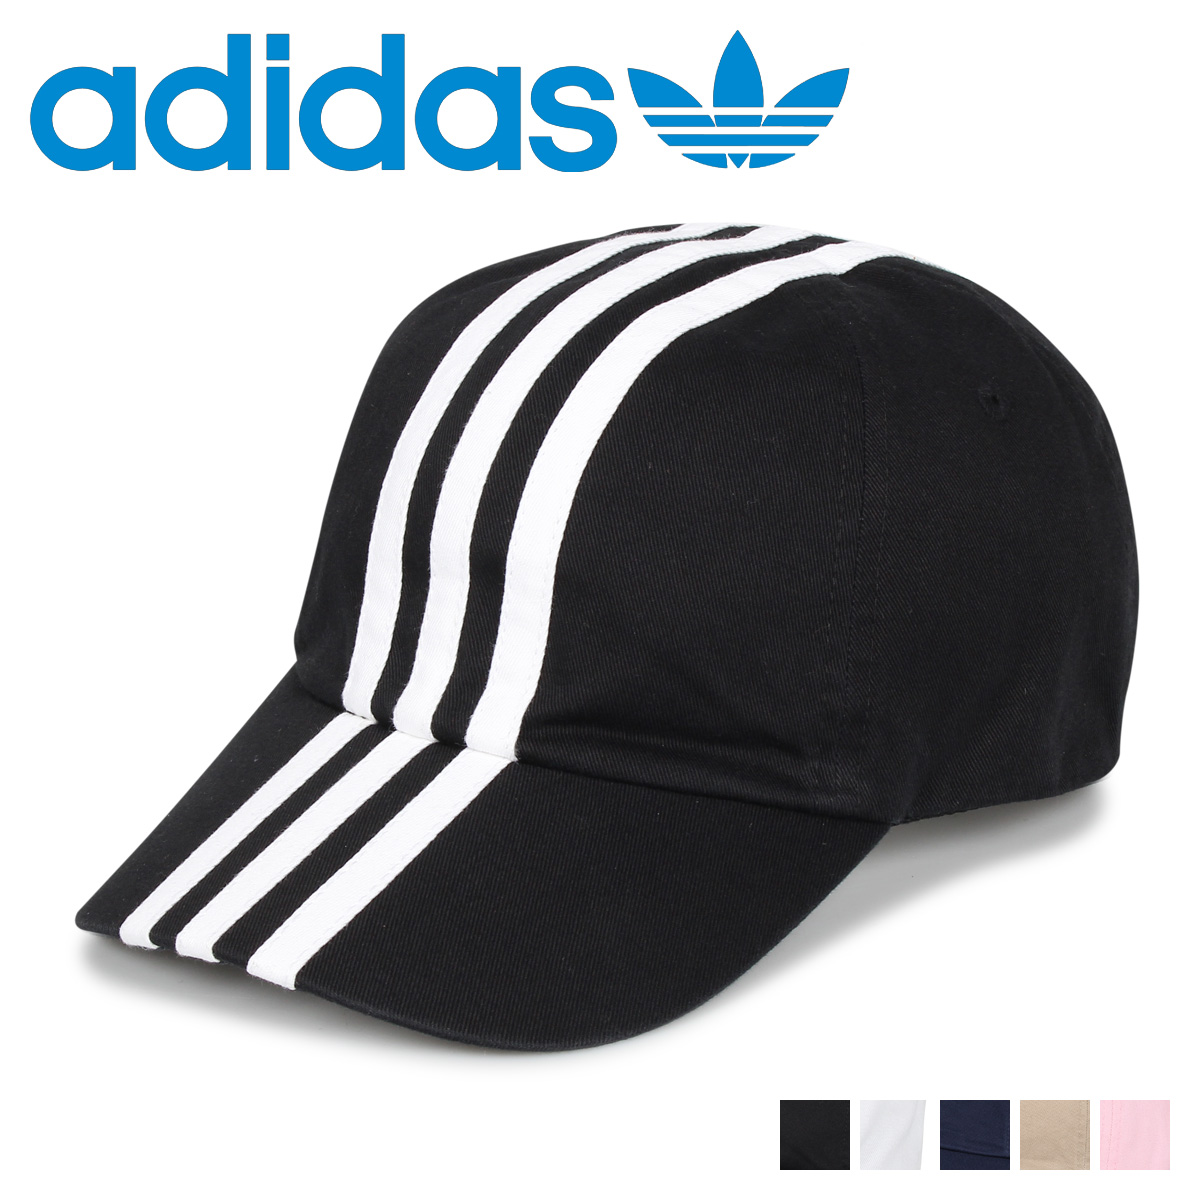 楽天市場 最大1000円offクーポン Adidas Ads Cm 3st Cap アディダス キャップ 帽子 ベースボールキャップ メンズ レディース ブラック ホワイト ネイビー ベージュ ピンク 黒 白 187 Goods Lab